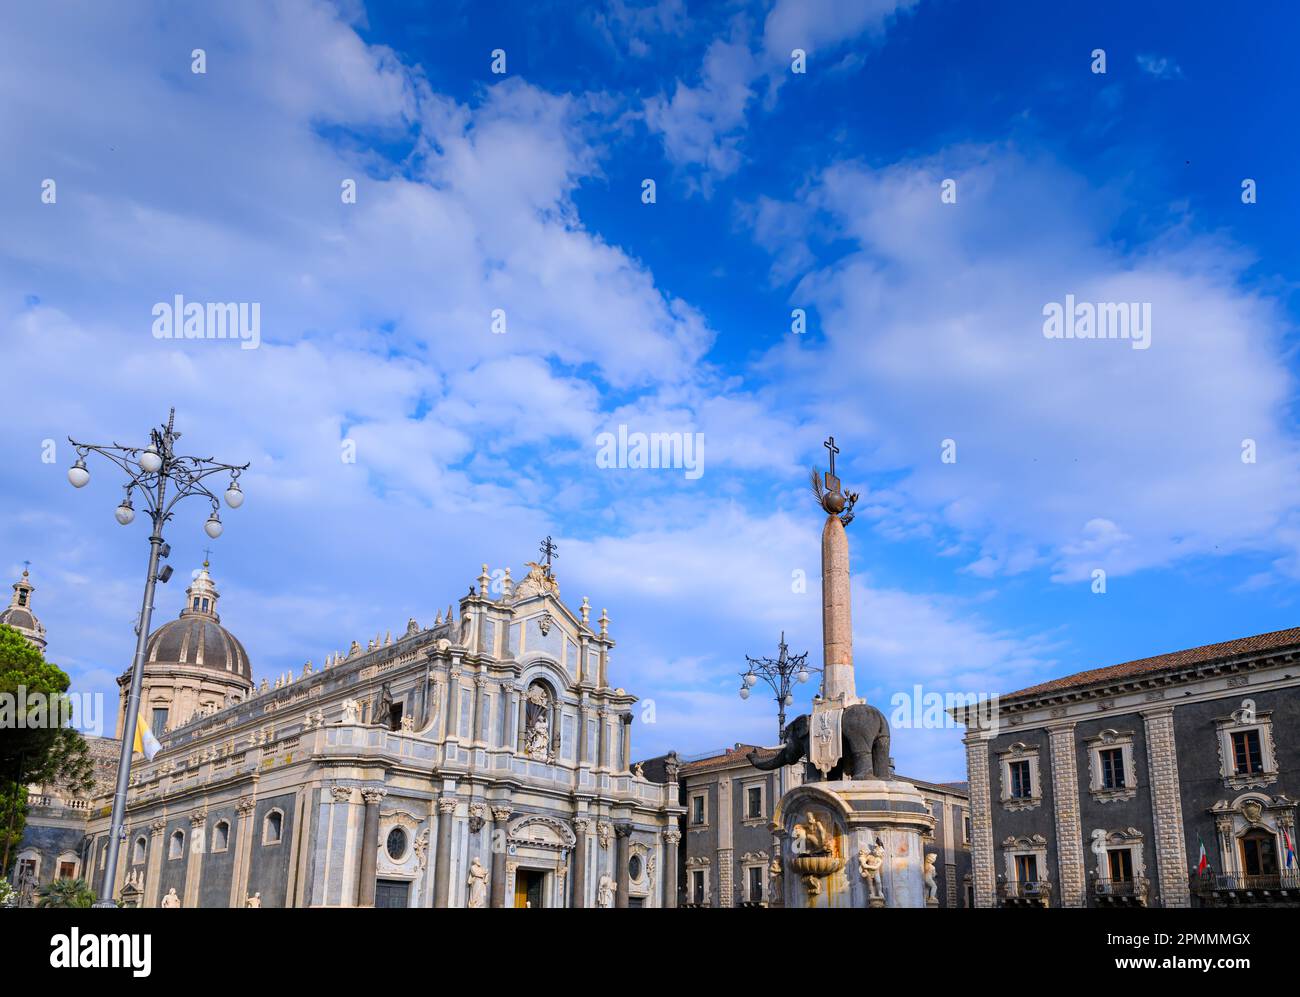 Blick auf den Kathedralenplatz, dominiert von der Kathedrale der Heiligen Agatha und dem Elefantenbrunnen in Catania, Sizilien, Süditalien. Stockfoto